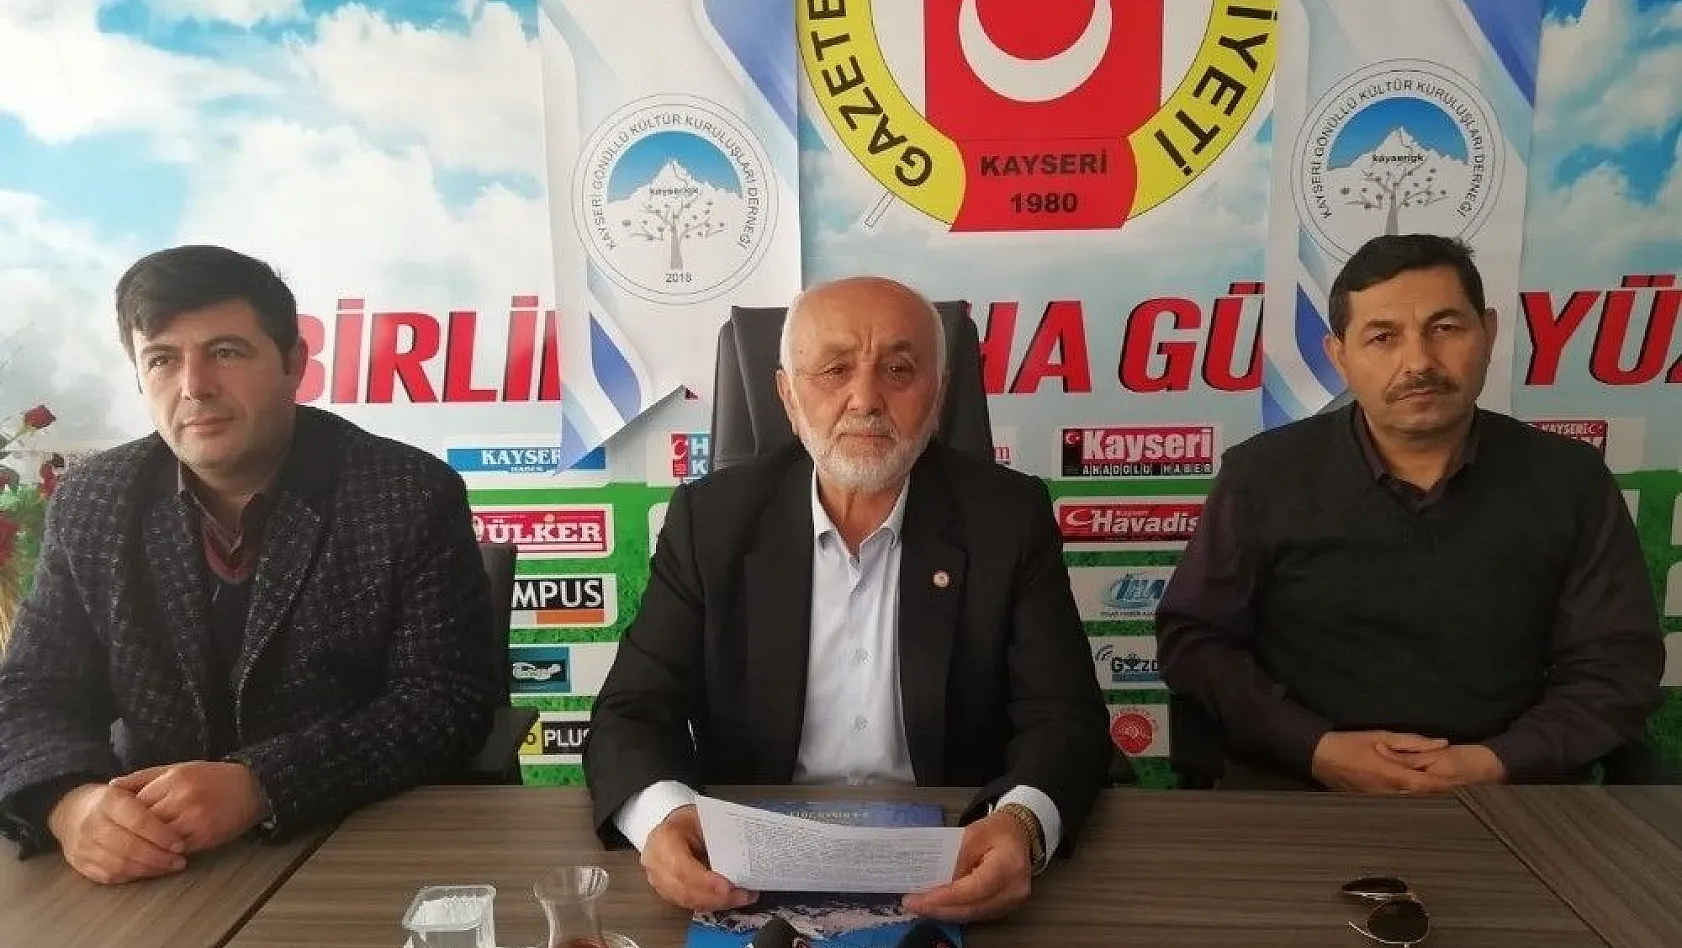 Kayseri Gönüllü Kültür Kuruluşları Derneği Başkanı Ahmet Taş 31 Mart Yerel Seçimlerini Değerlendirdi
